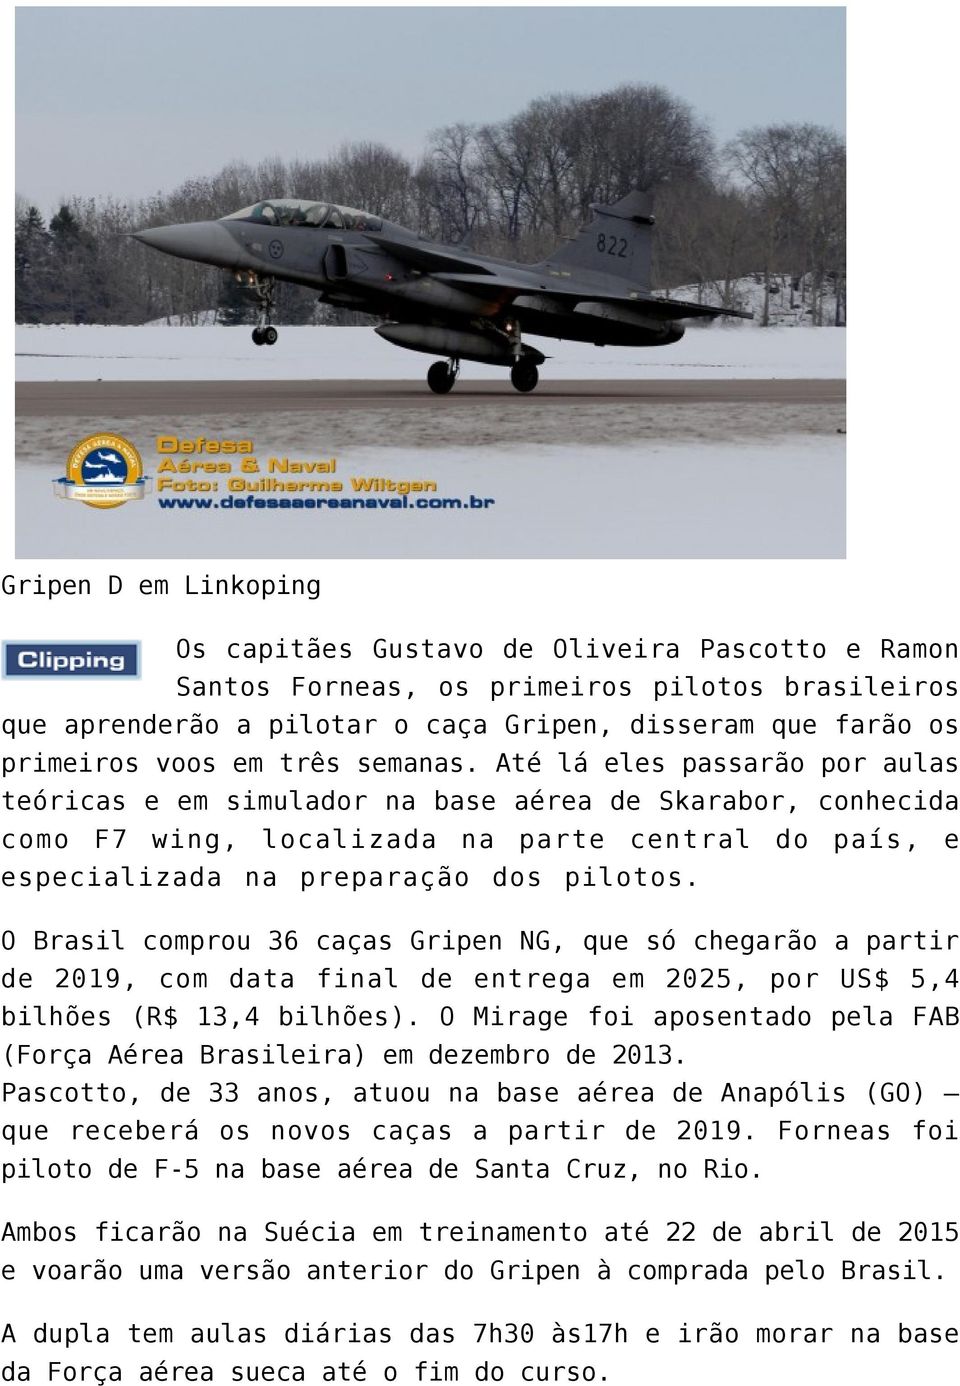 O Brasil comprou 36 caças Gripen NG, que só chegarão a partir de 2019, com data final de entrega em 2025, por US$ 5,4 bilhões (R$ 13,4 bilhões).